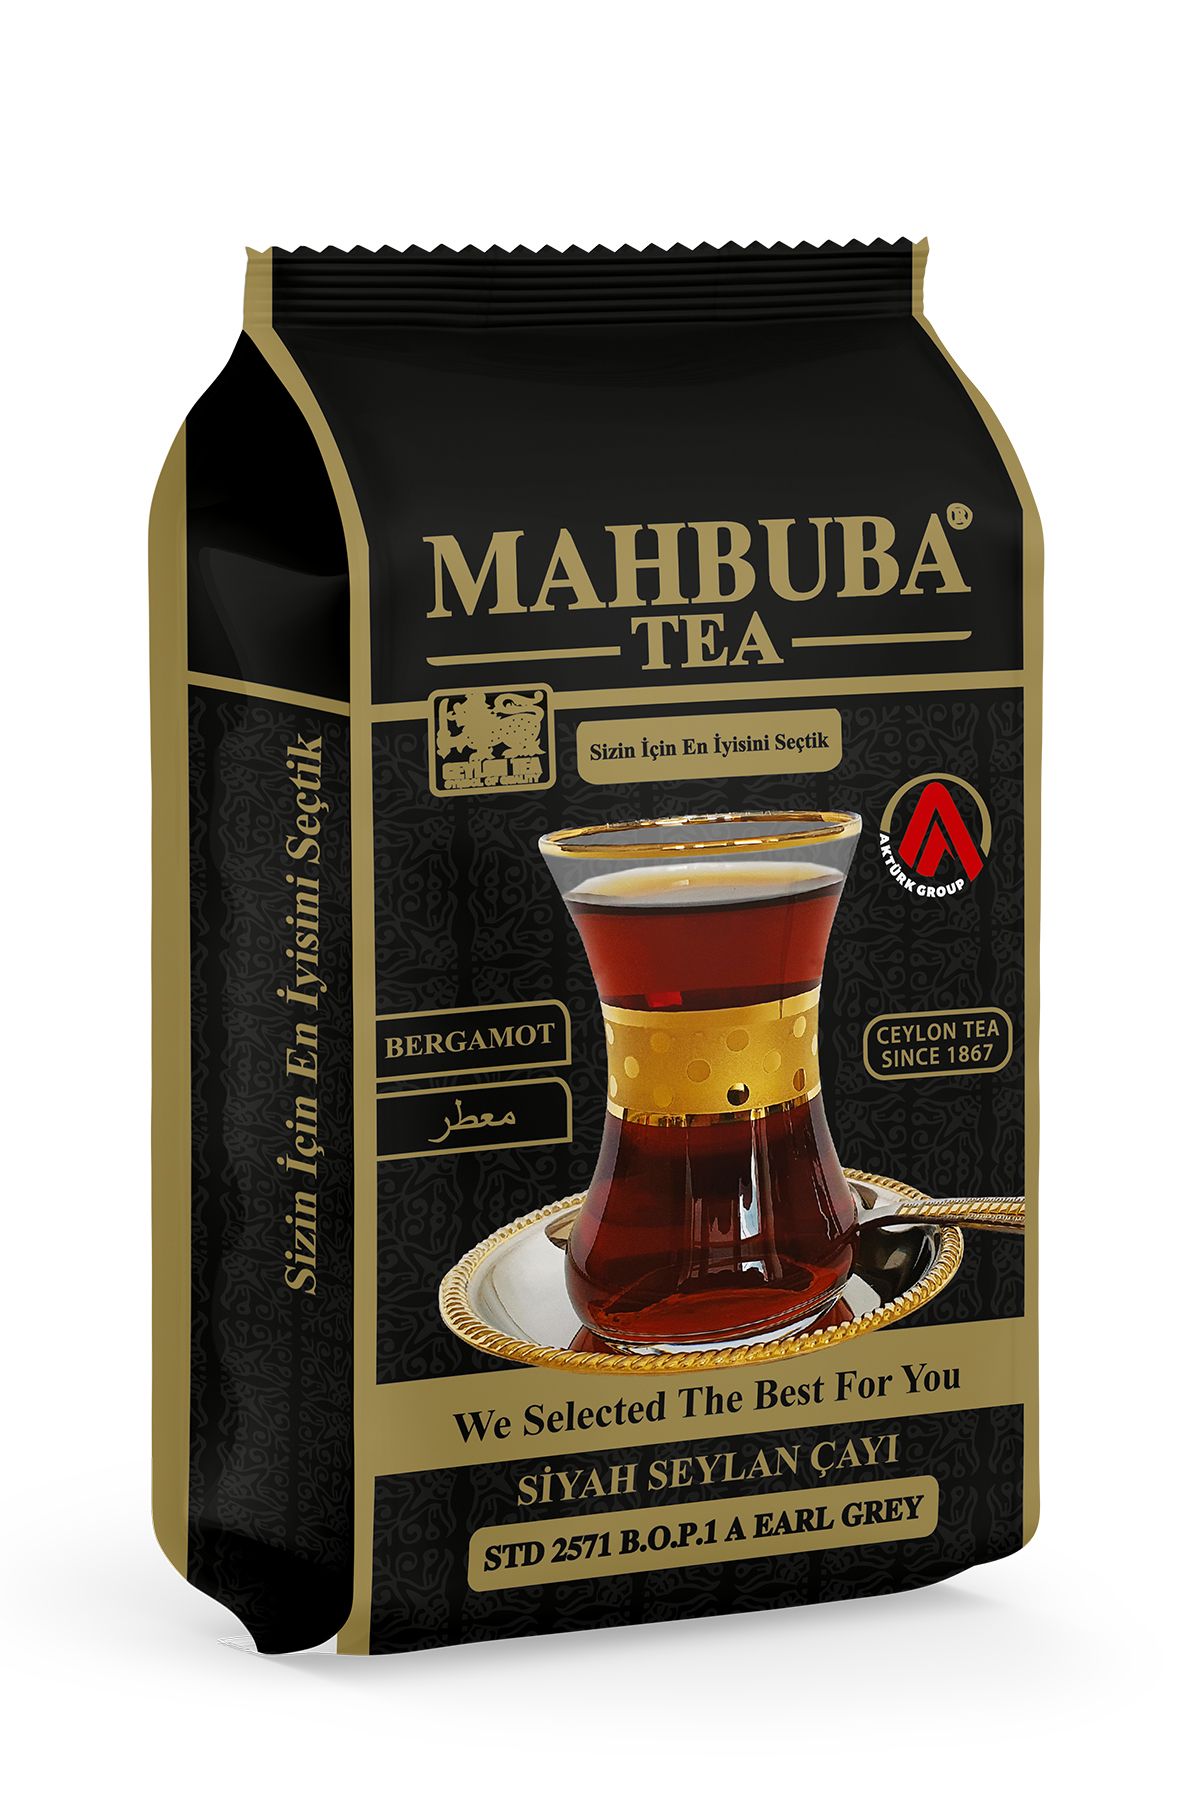 Mahbuba Tea Std 2571 Earl Grey Bergamot Aromalı Ithal Seylan Sri Lanka Ceylon Kaçak Siyah Yaprak Çayı 200gr